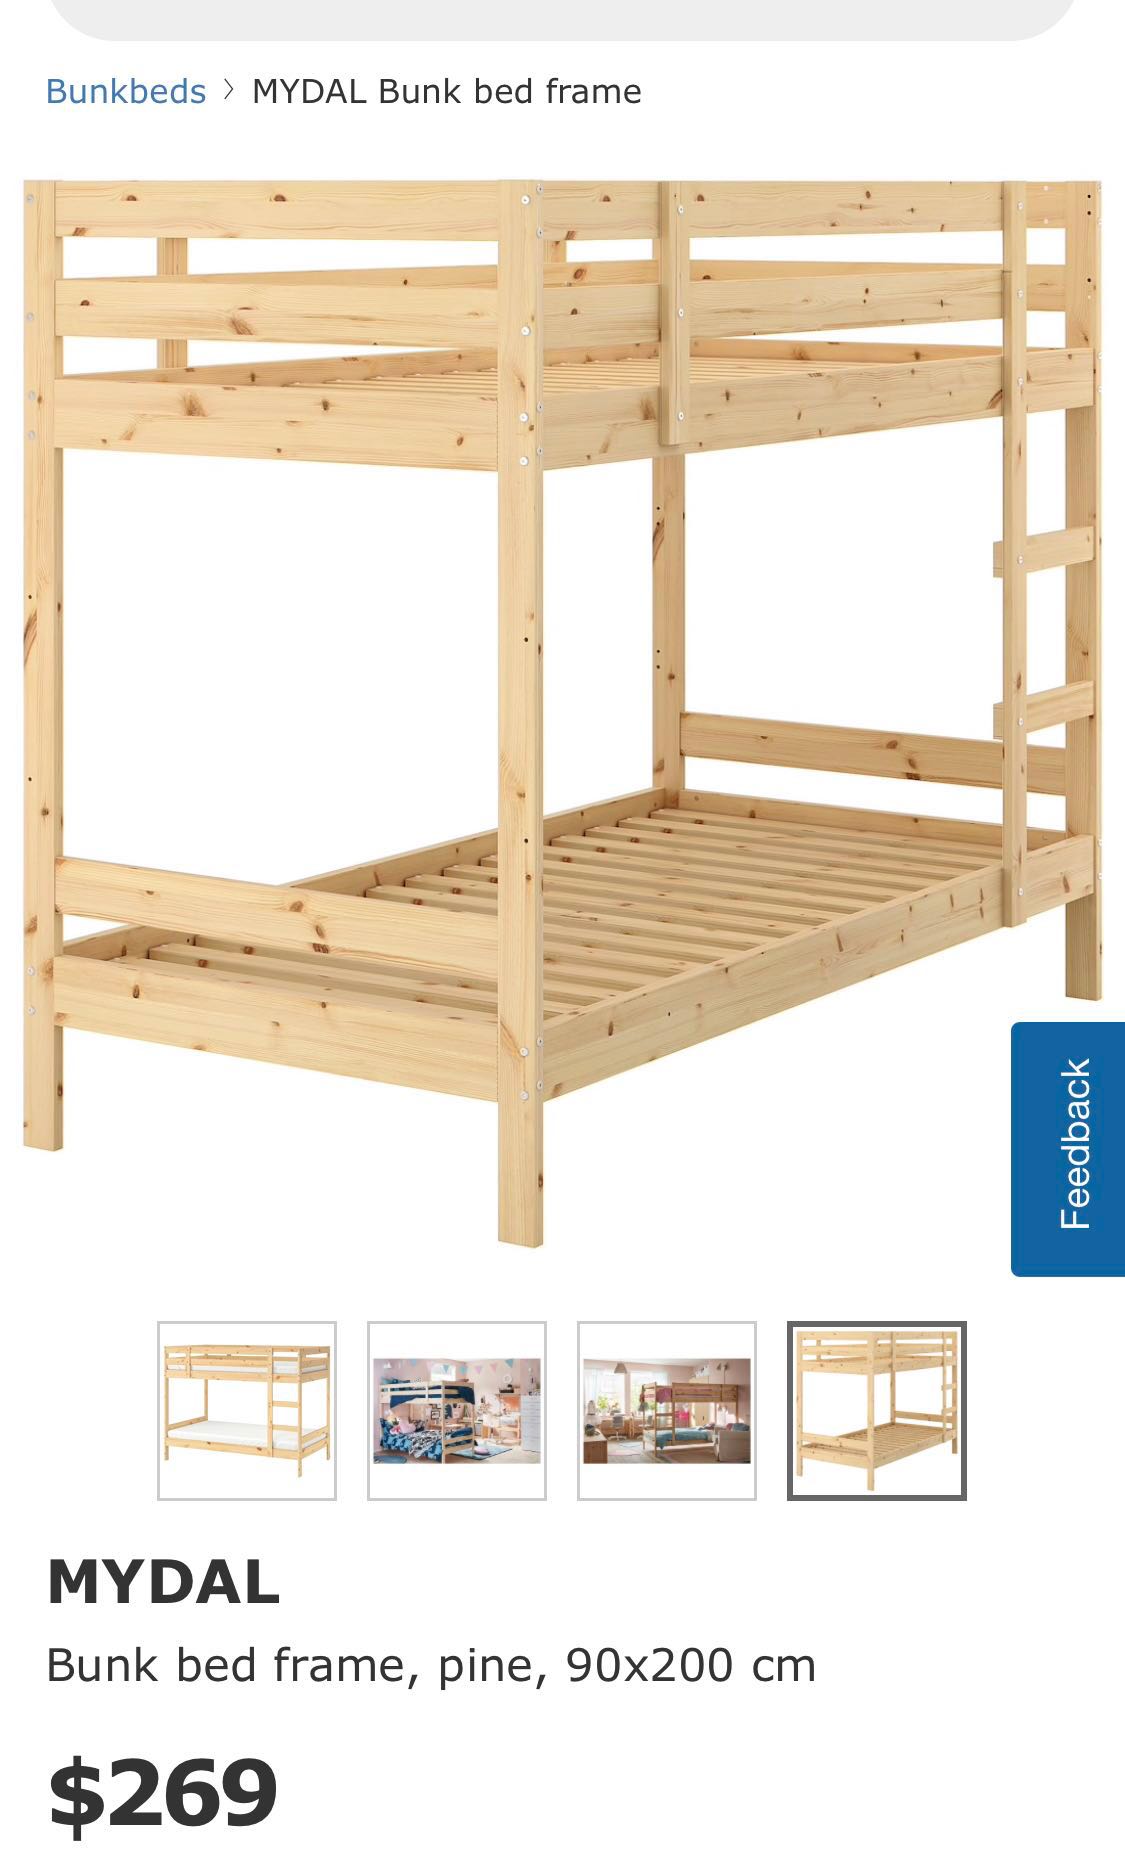 Ikea Mydal Bunk Bed Frame Furniture, Mydal Bunk Bed Frame Pine